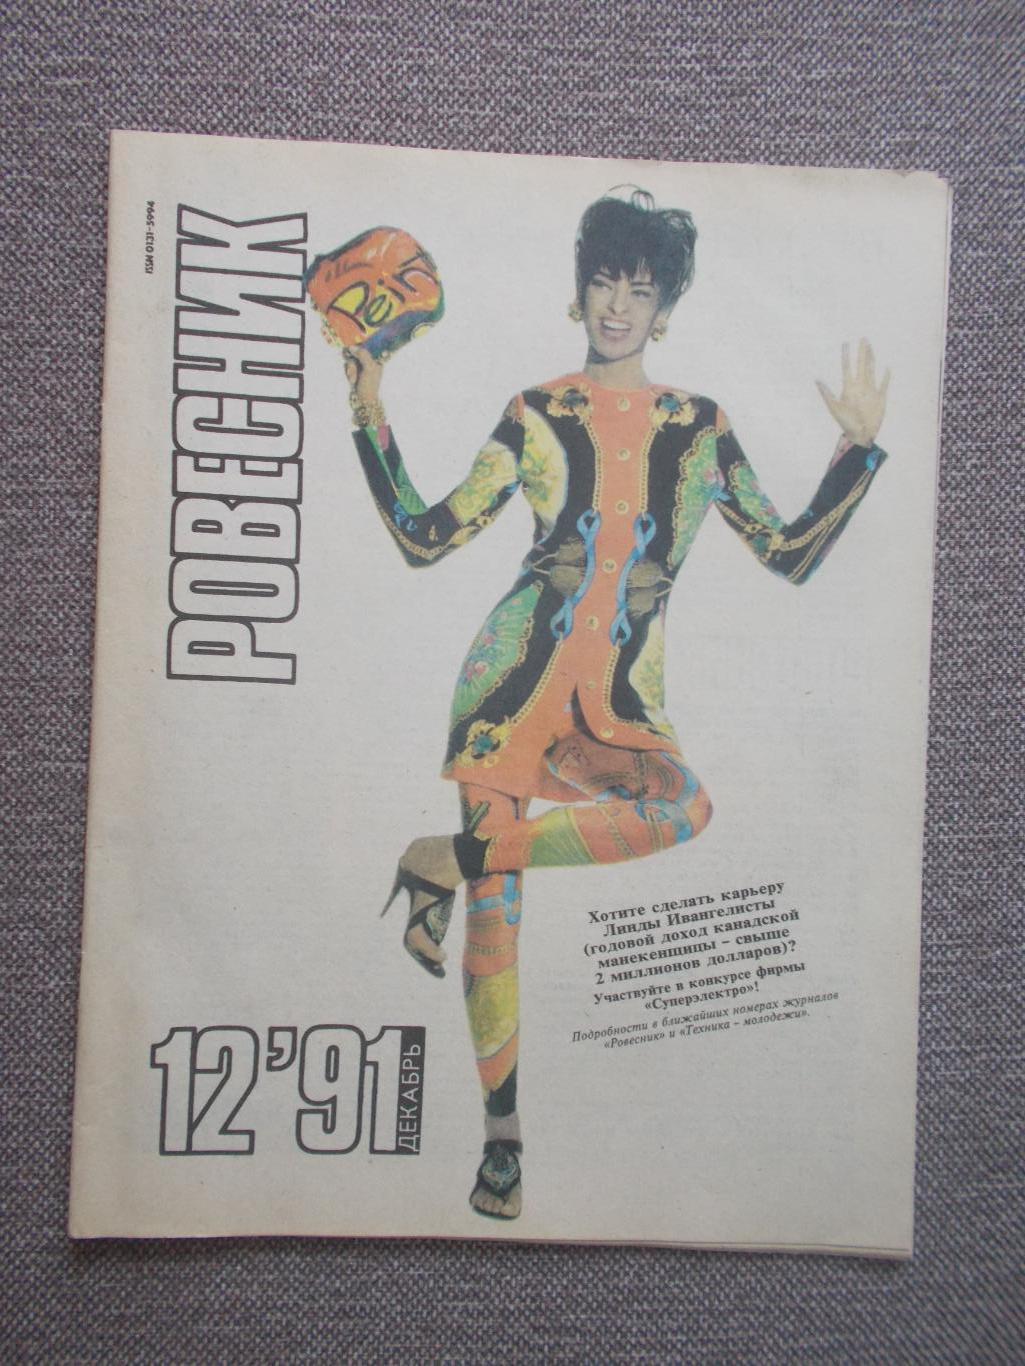 Журнал СССР :Ровесник№ 12 (декабрь) 1991 г. (Молодежный музыкальный журнал